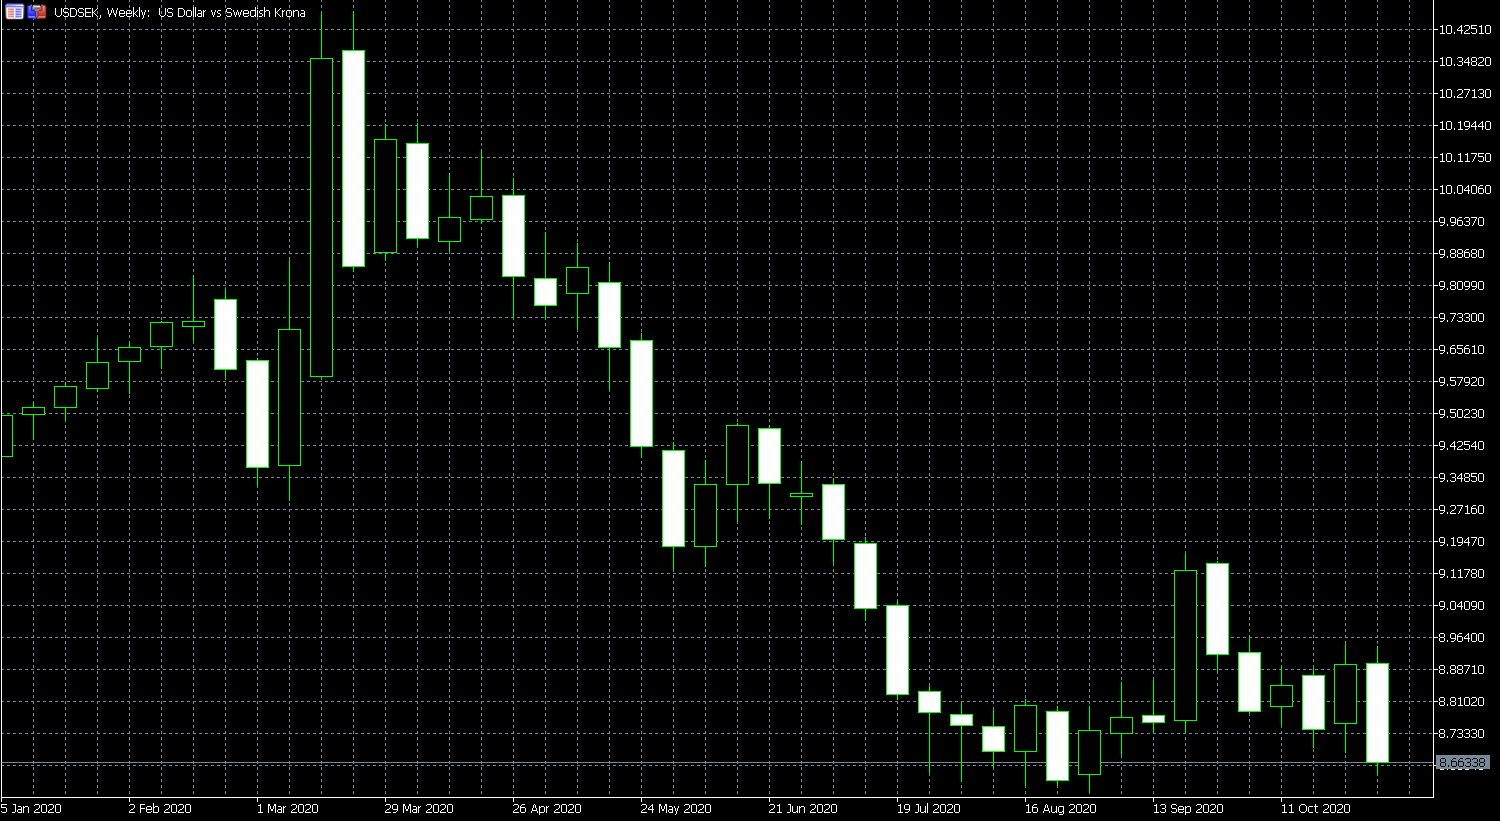 Price of USD/SEK is Down